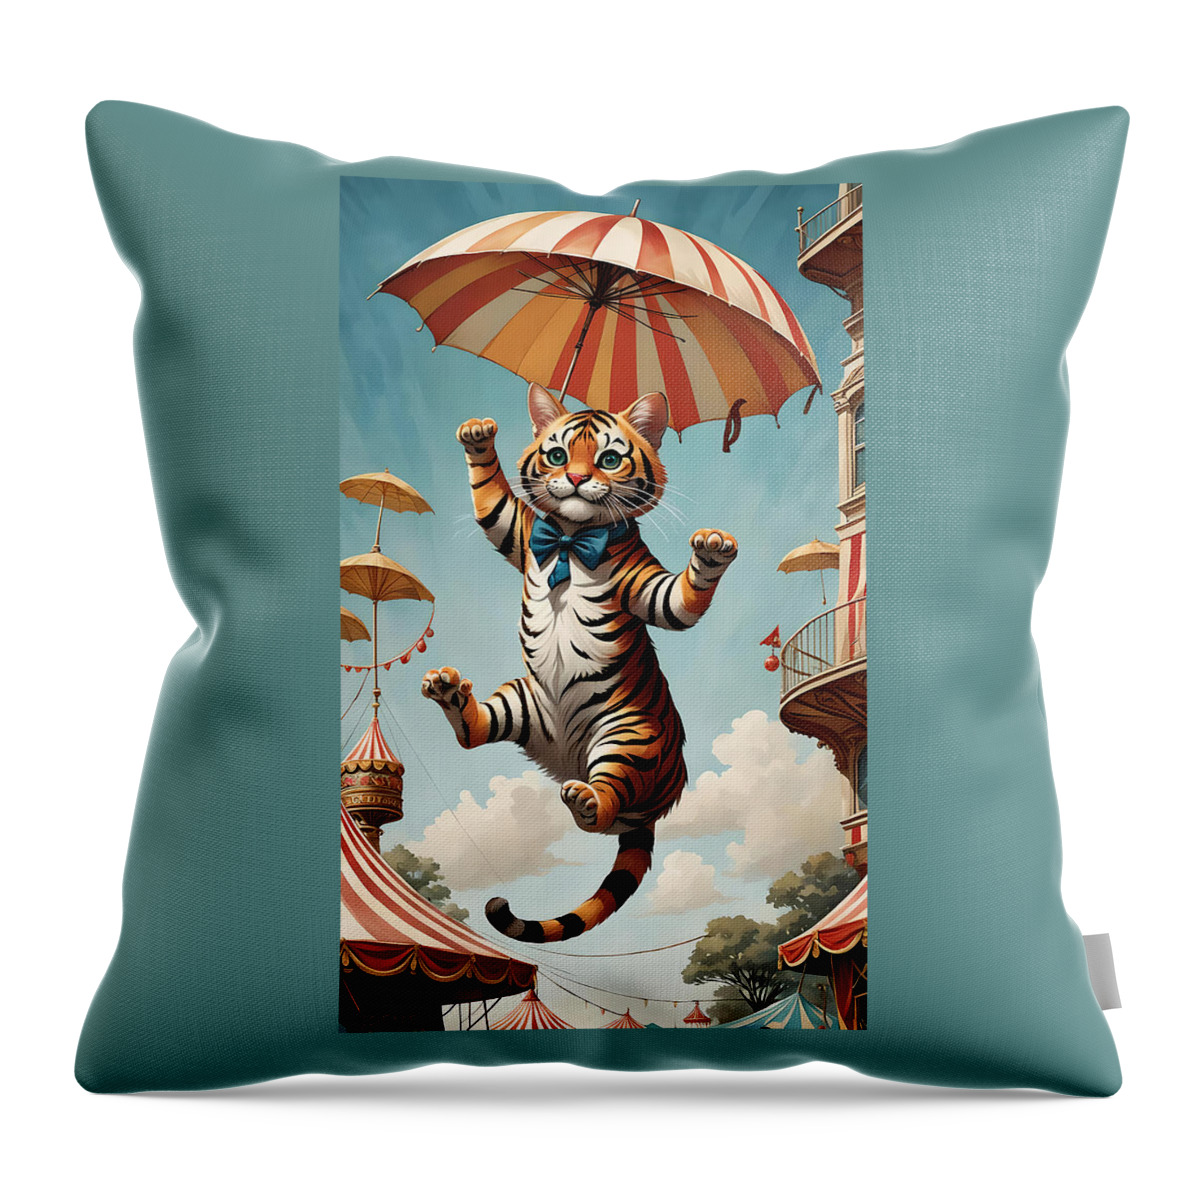 Cat Throw Pillow featuring the digital art Nine Lives by Greg Joens